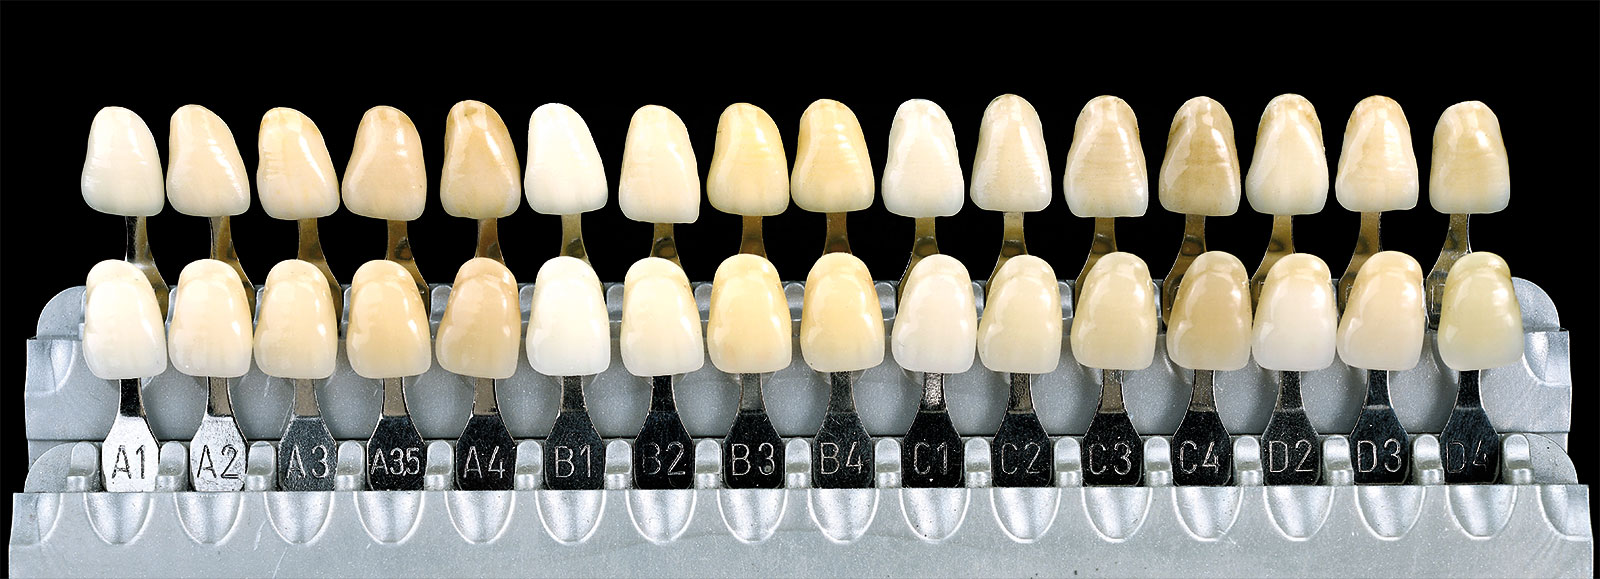 Farbvergleich Dentalkeramik unica - vita